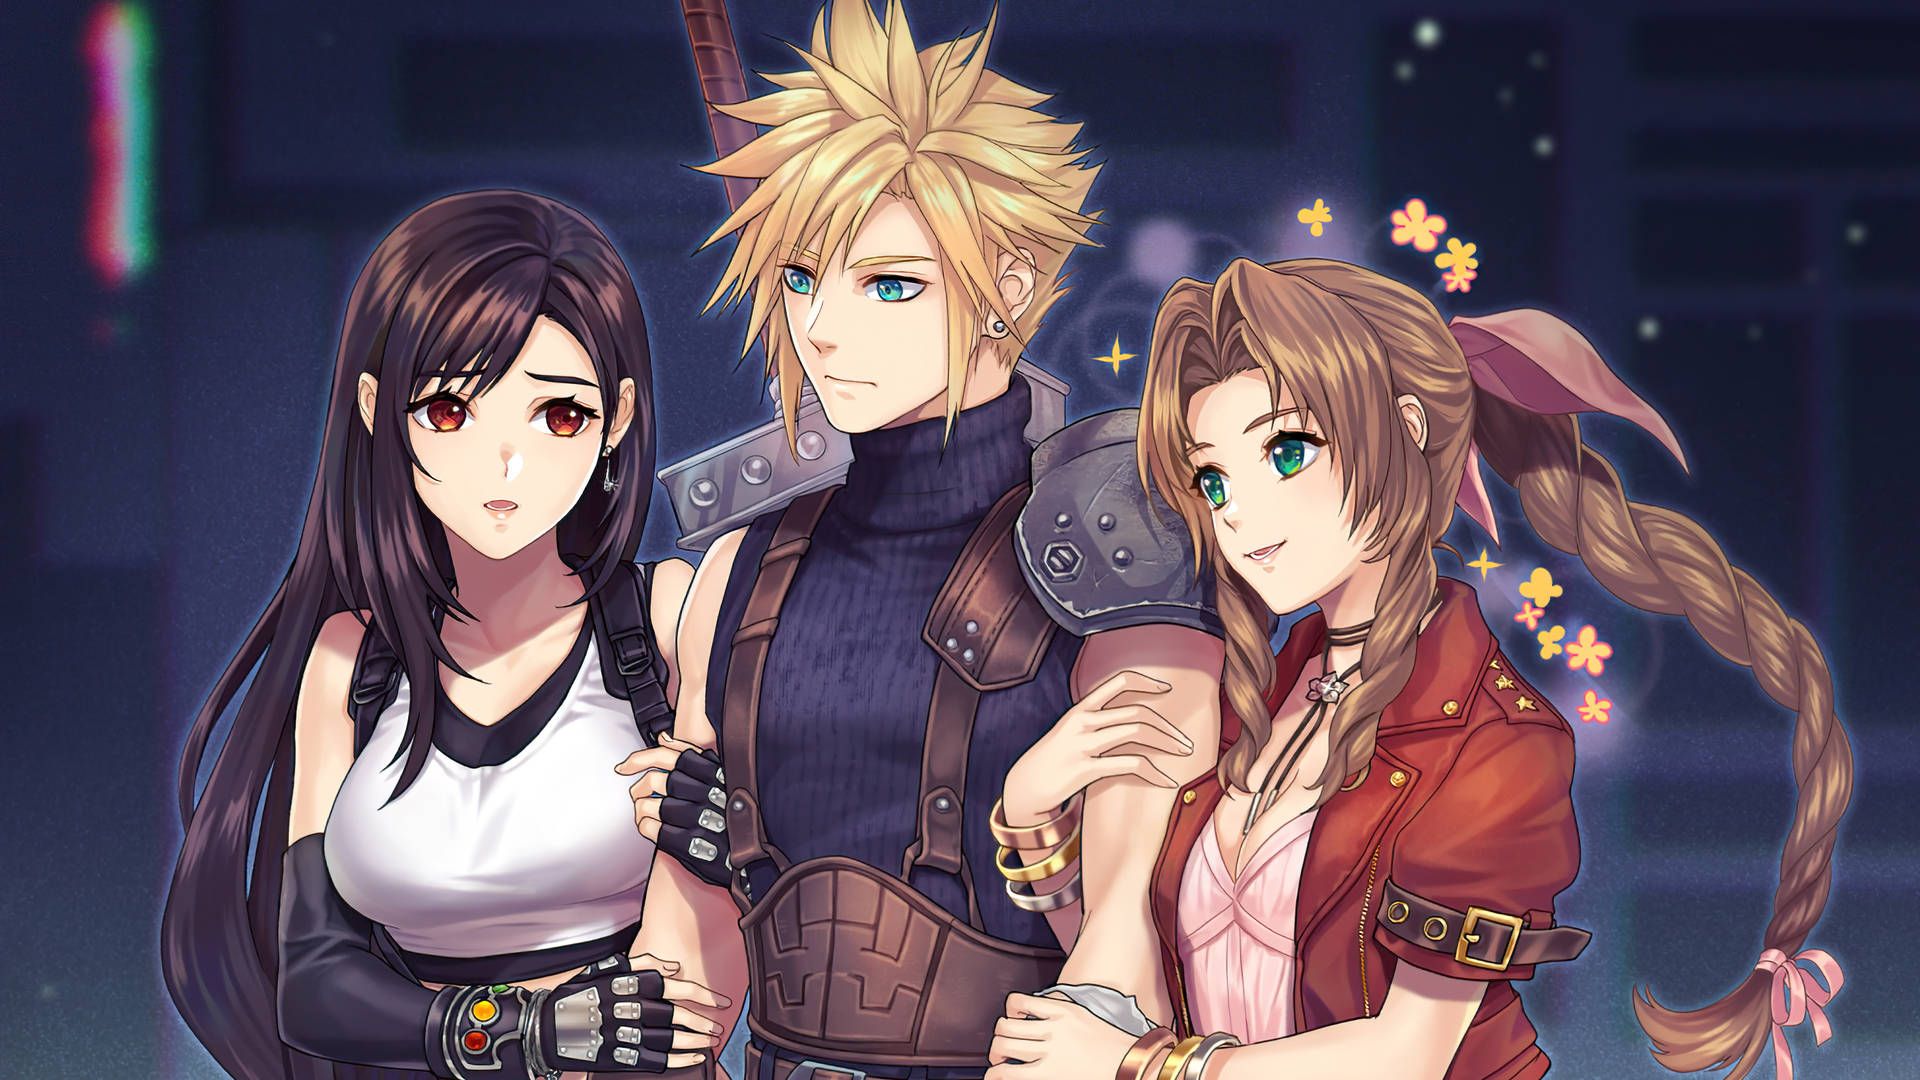  Final Fantasy Hintergrundbild 1920x1080. Final Fantasy 7 Wallpaper